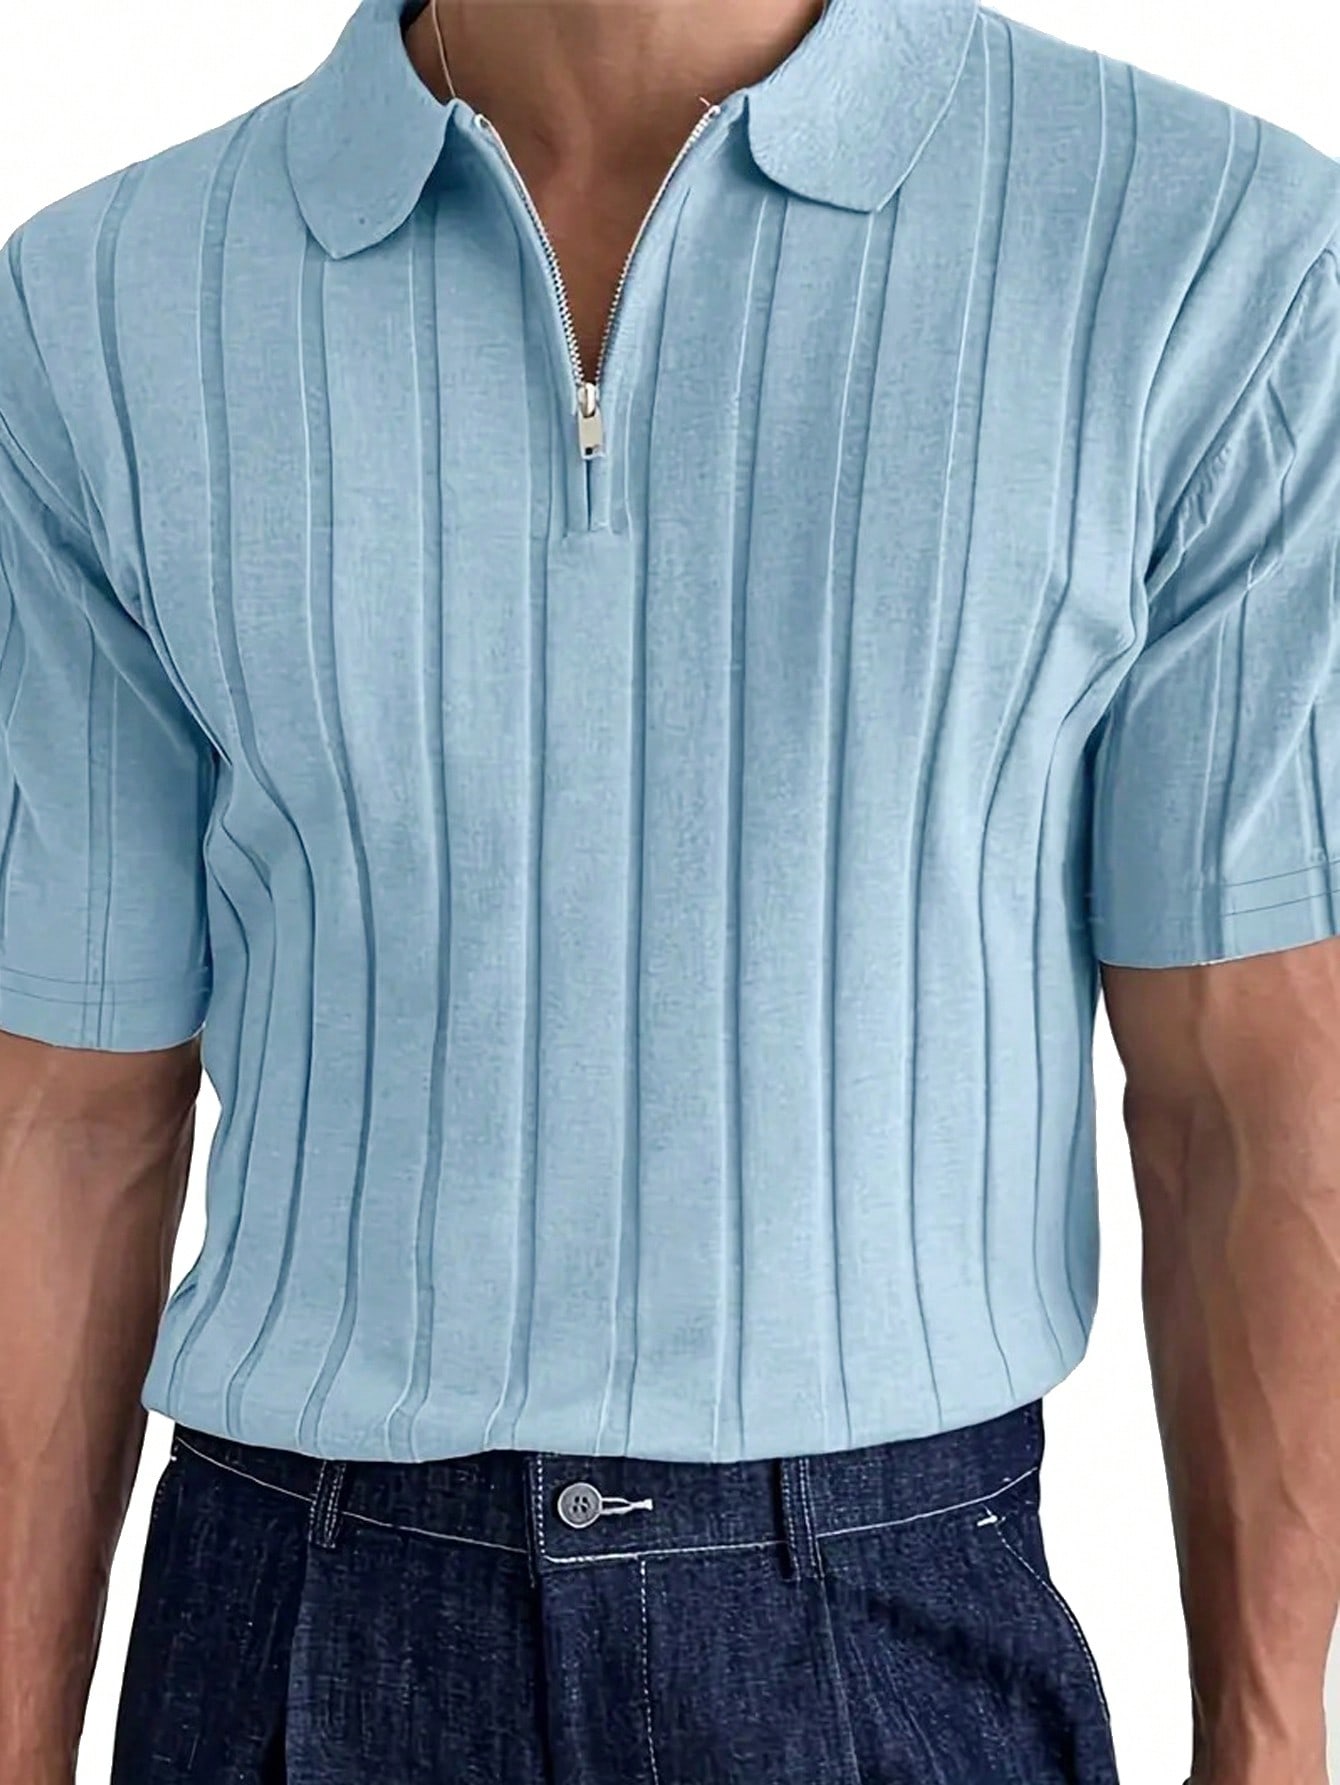 Мужская рубашка поло в рубчик с коротким рукавом и воротником на пуговицах на молнии, голубые